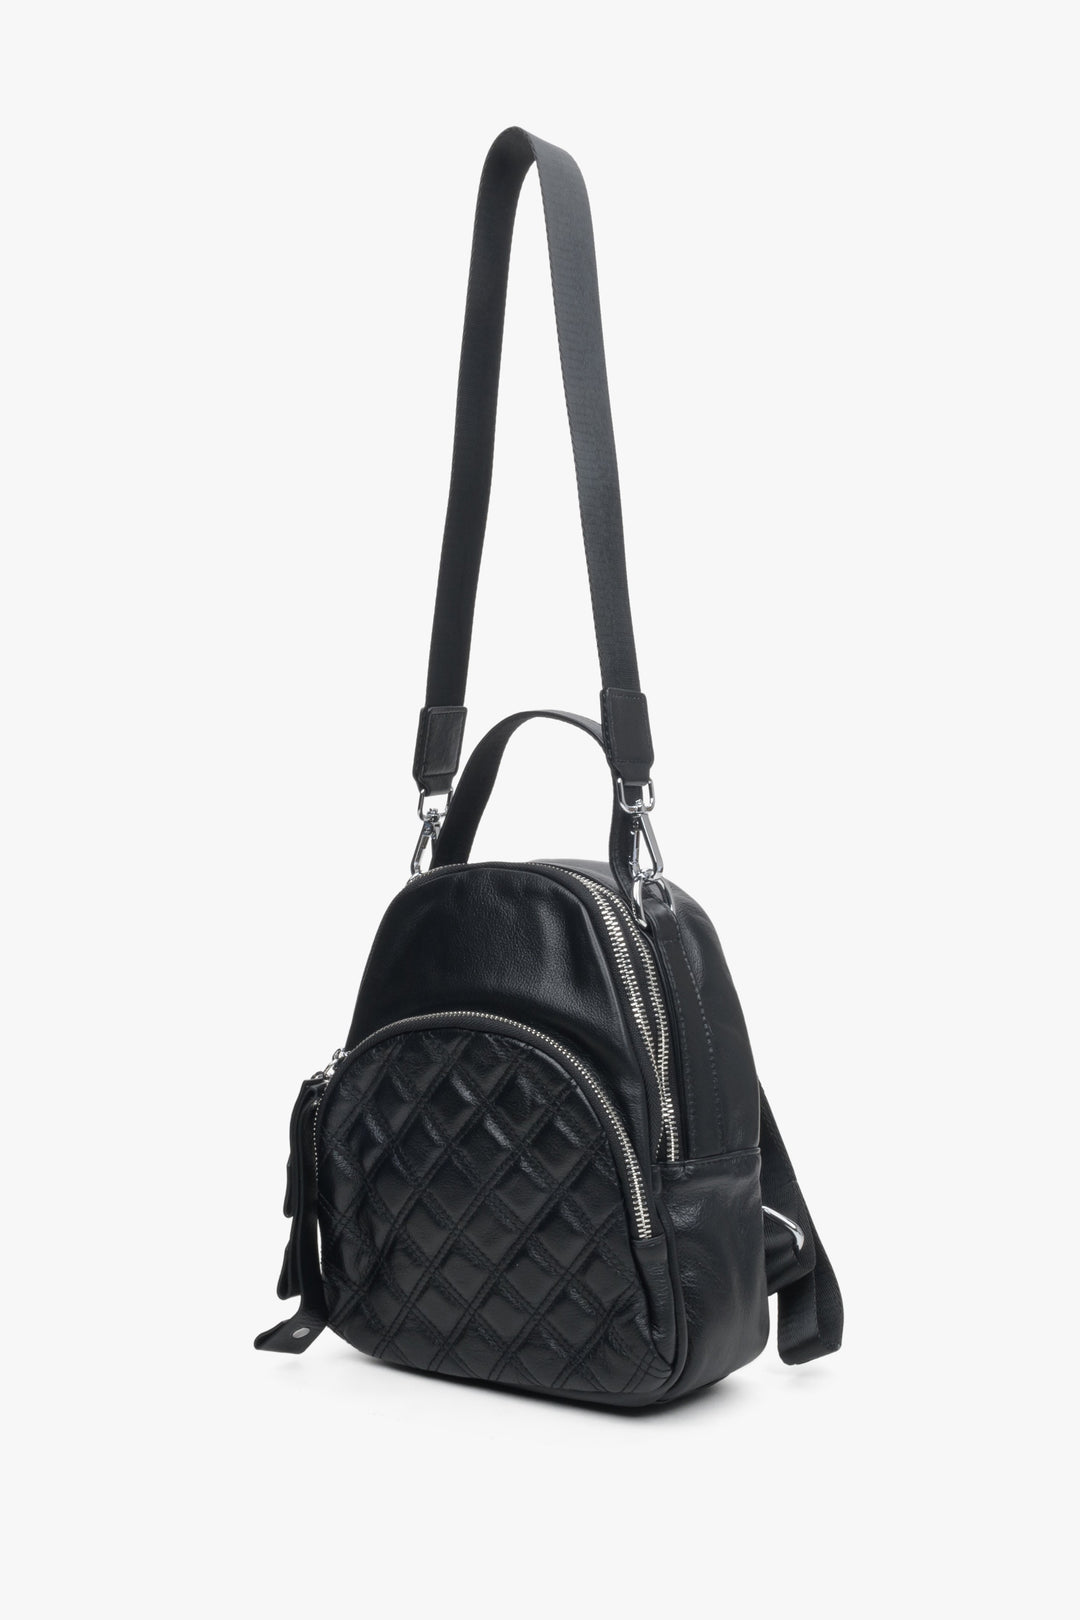 Skórzany plecak damski Estro w kolorze czarnym - prezentacja modelu po rozwinięciu długiego paska.